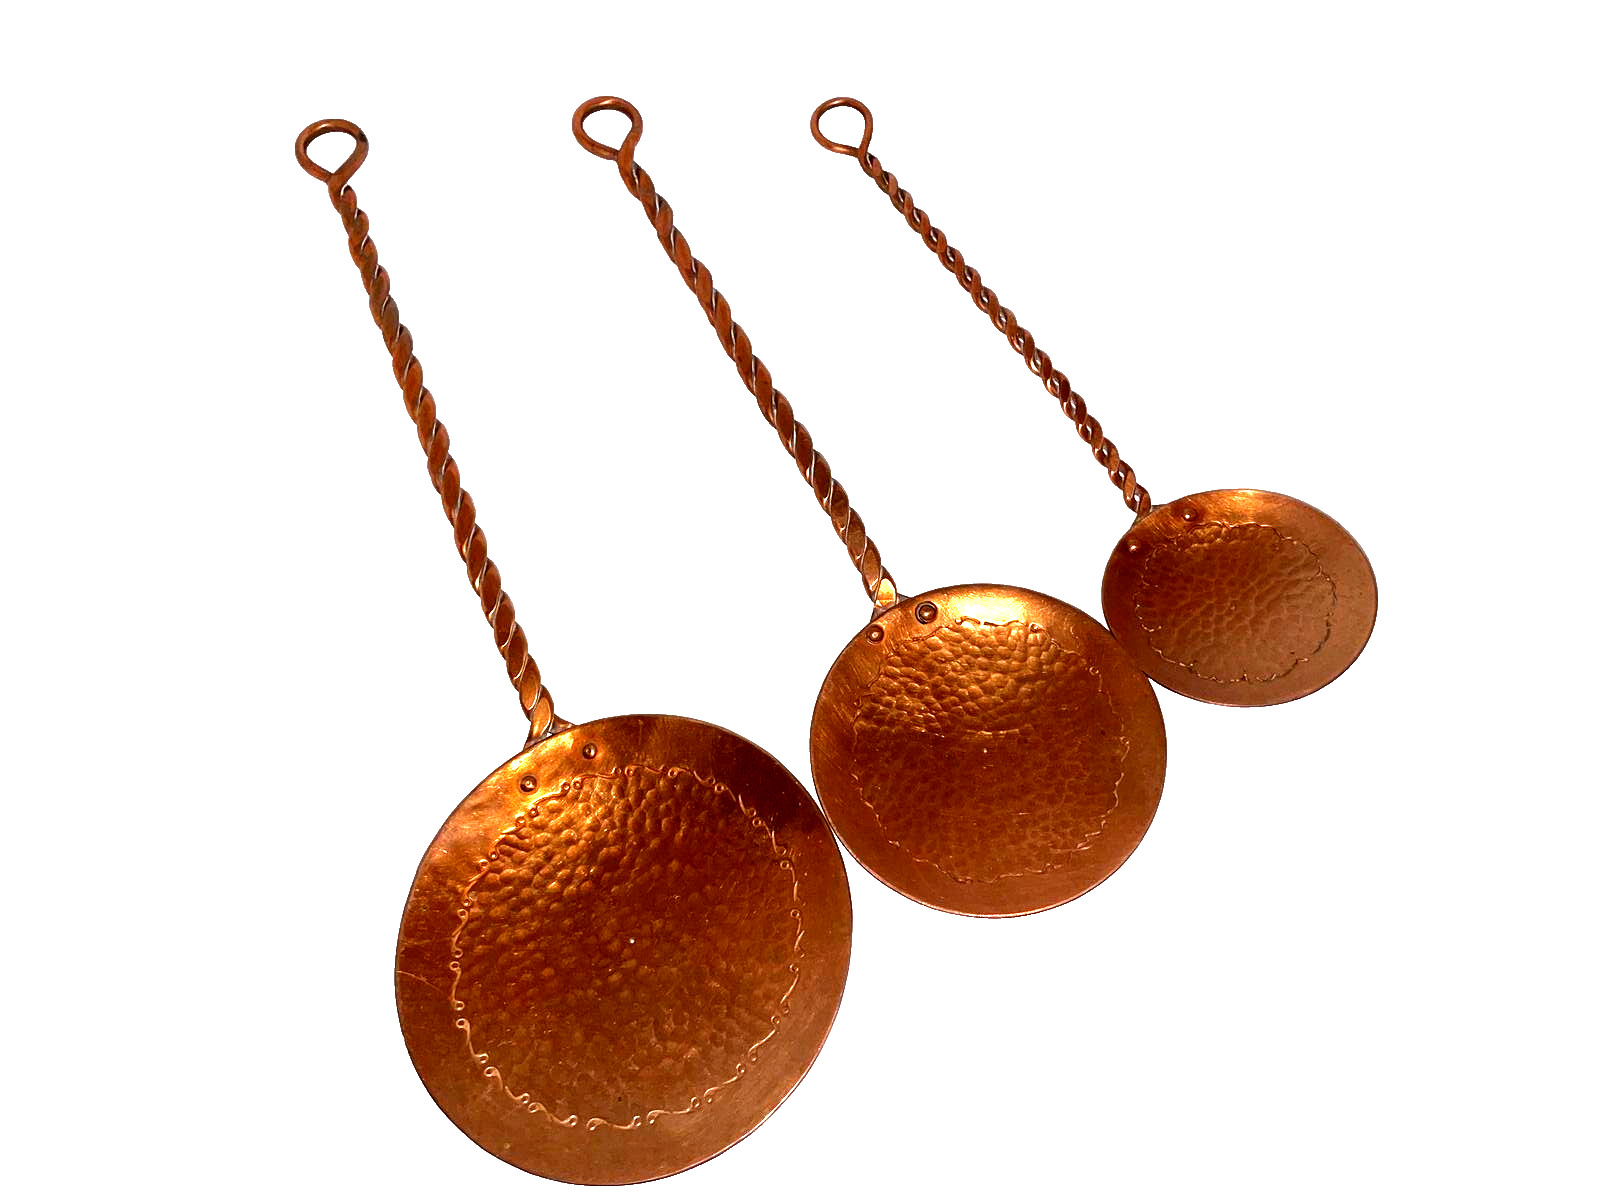 Set of 3 Copper Hanging Utensils Vintage Twisted